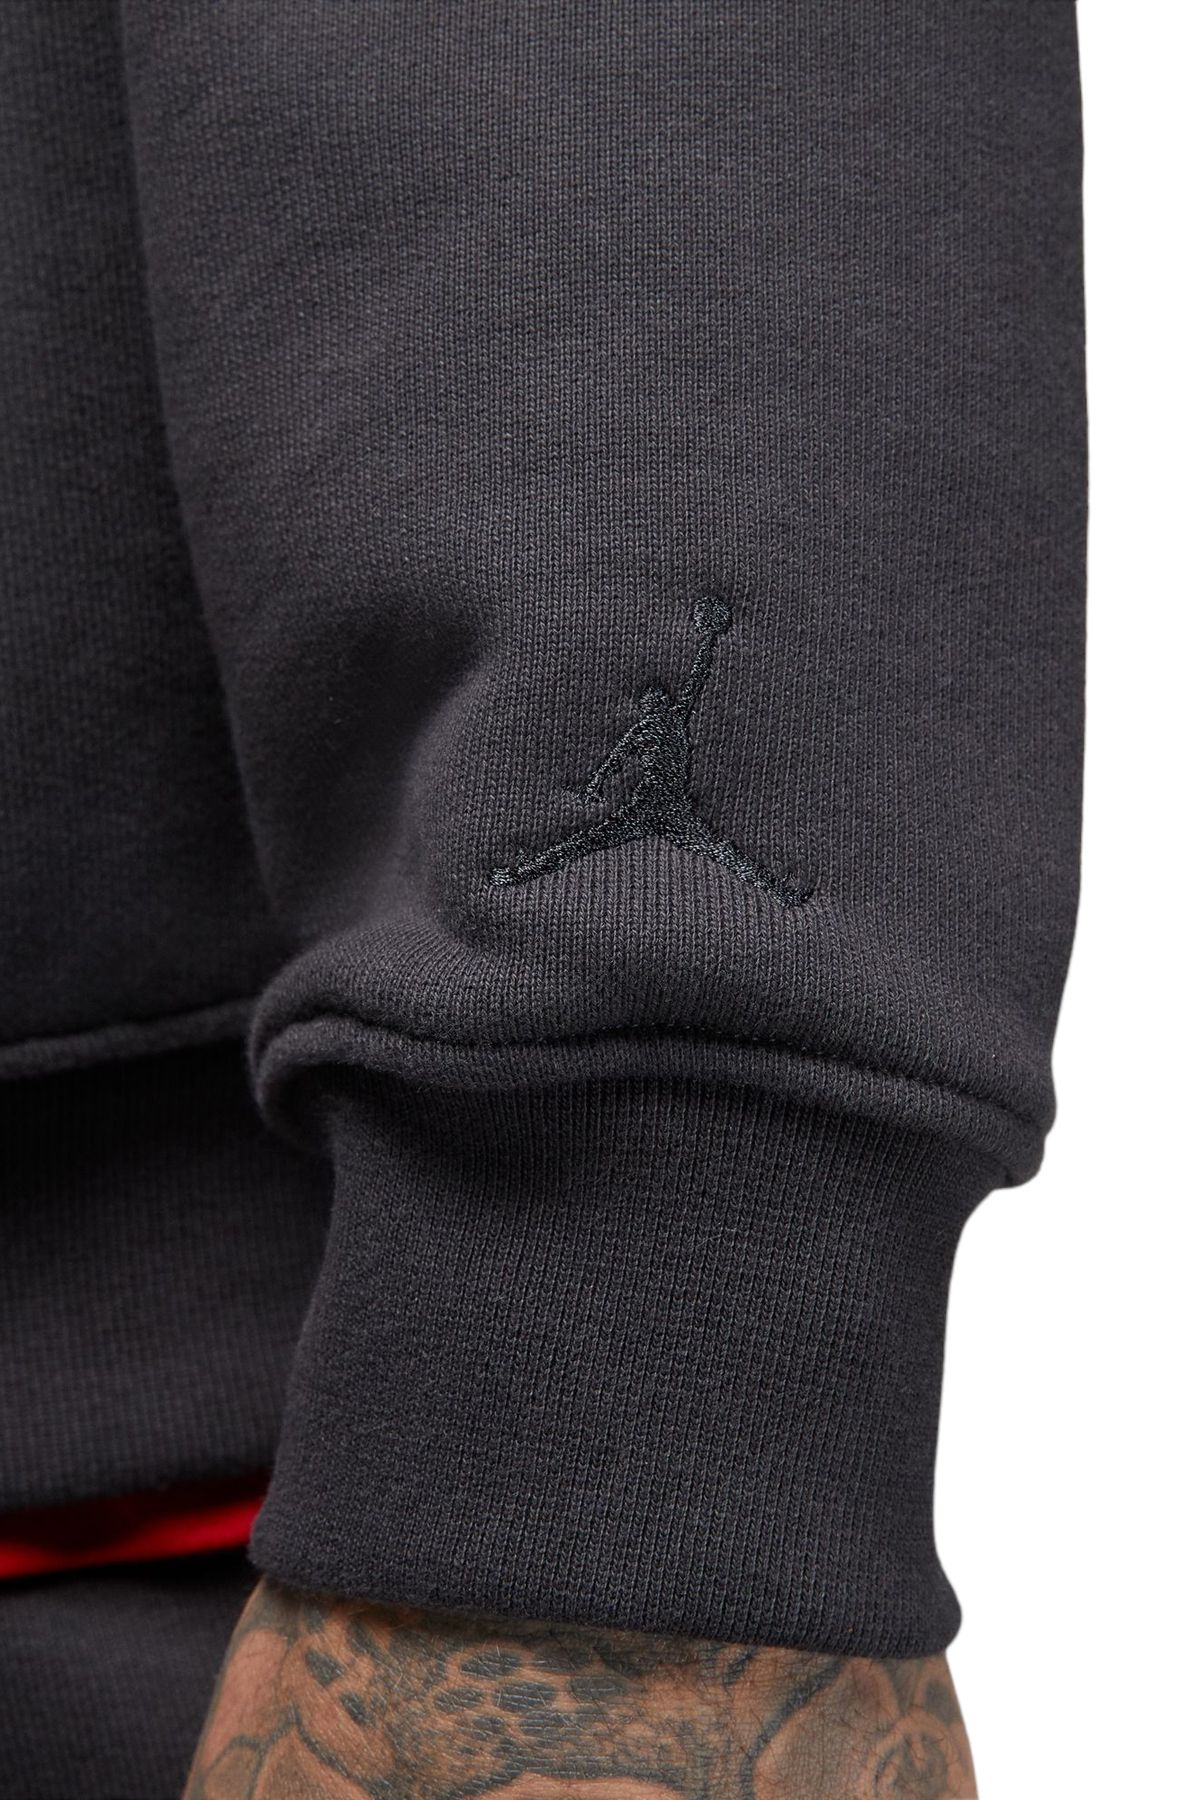 Air Jordan Wordmark Men's Fleece Crew-Neck Sweatshirt